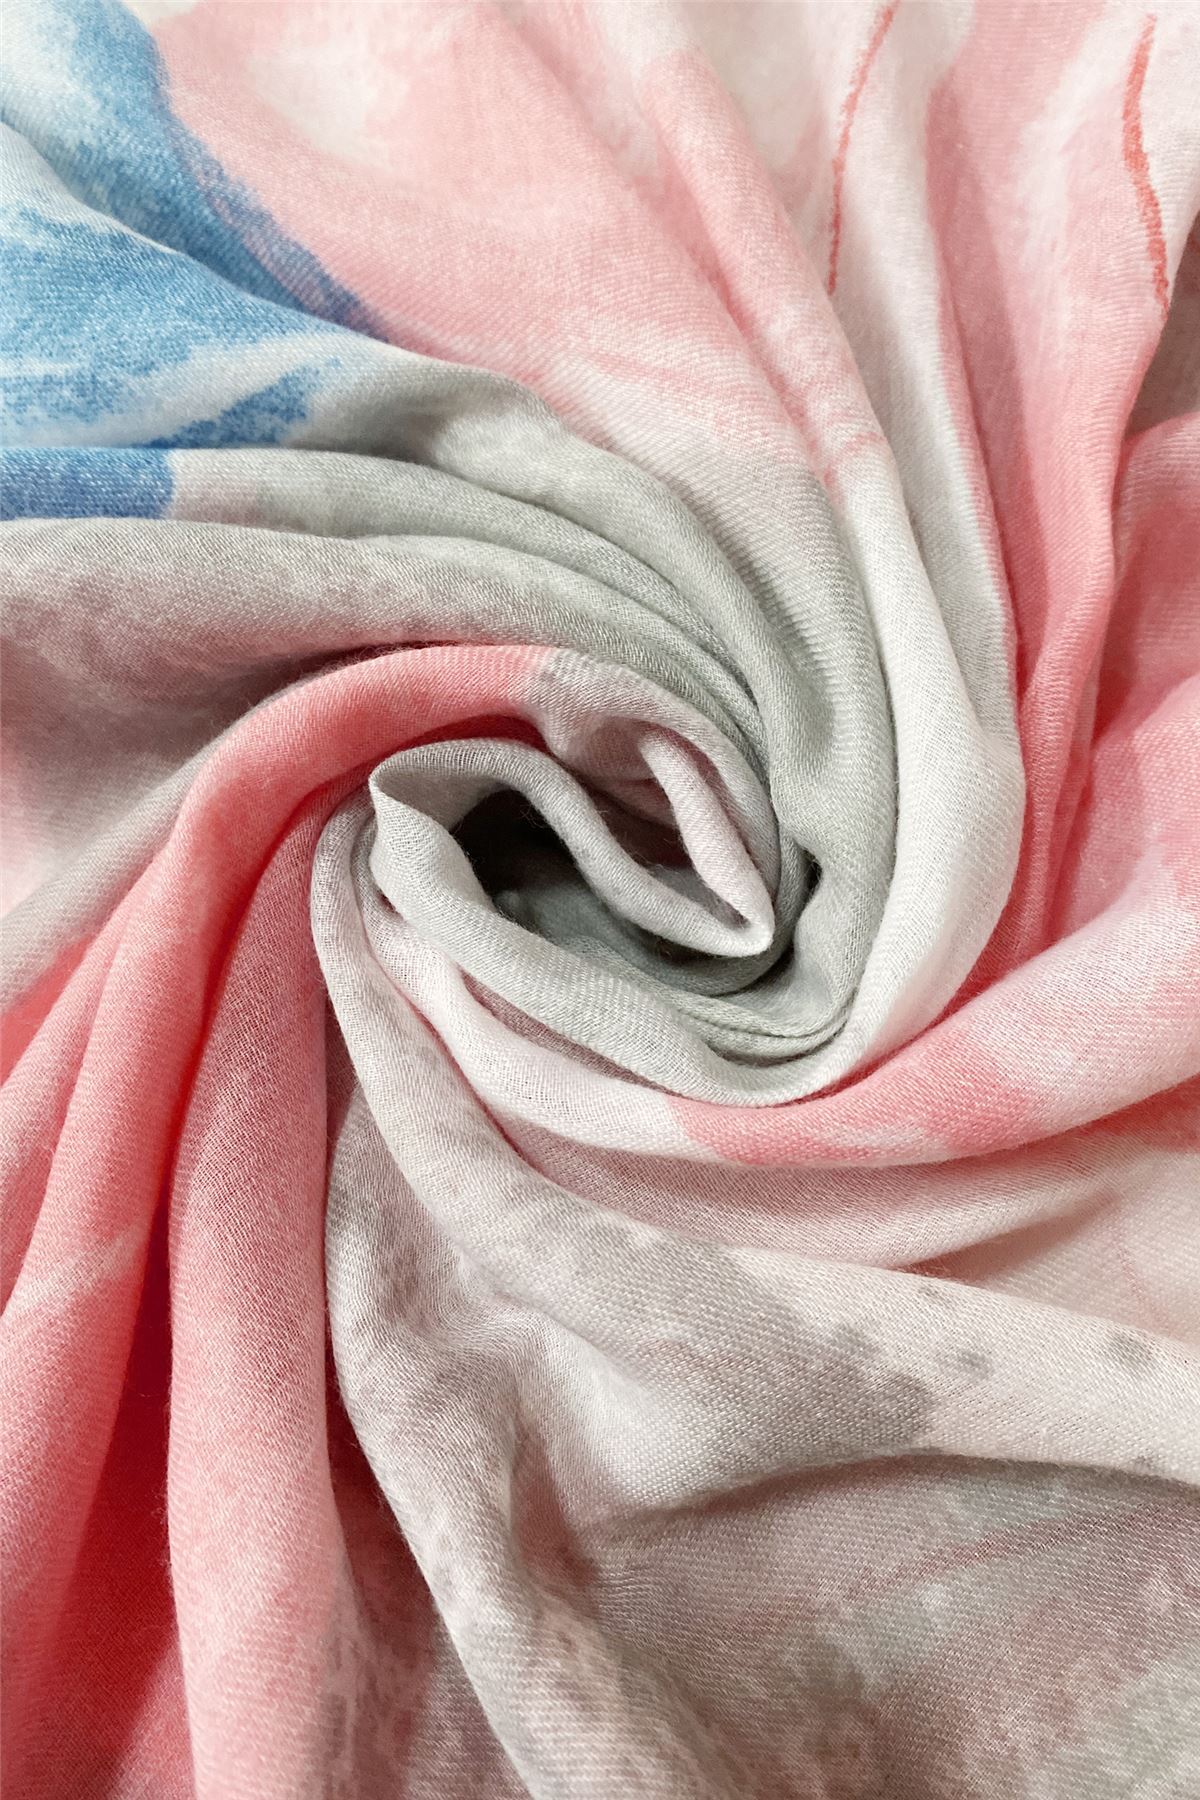 Bufanda-Mantón de algodón, 85 cm x 180 cm, estampado de flores grandes pintadas, coral